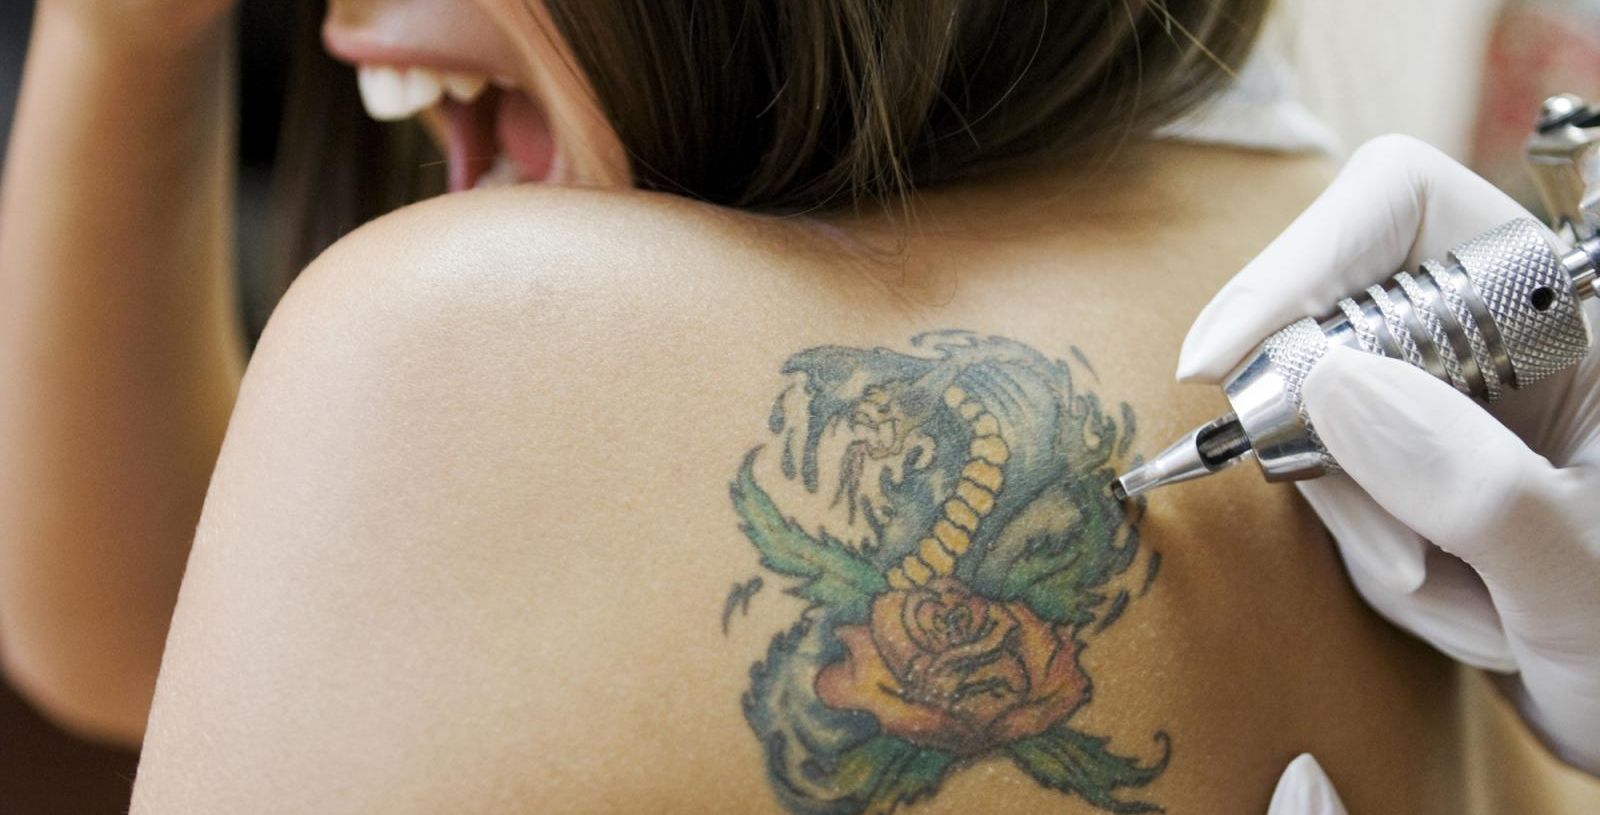 Δείτε σε ποια σημεία ο πόνος από το τατουάζ είναι οξύτερος (φώτο)